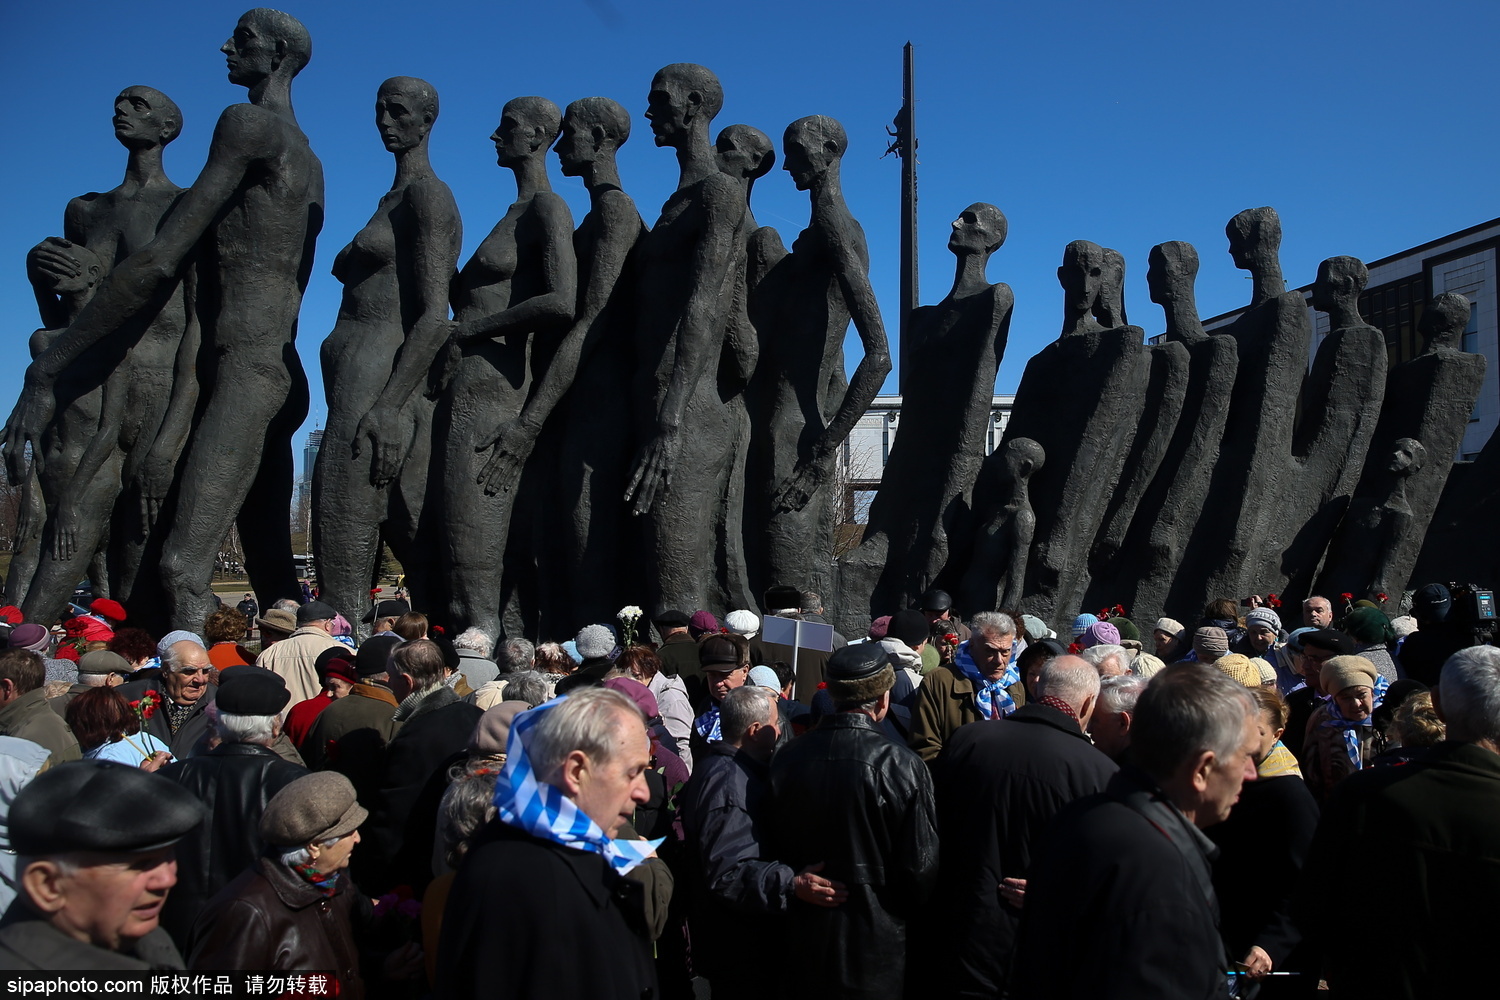 俄罗斯民众聚集参加纪念纳粹集中营解放日活动